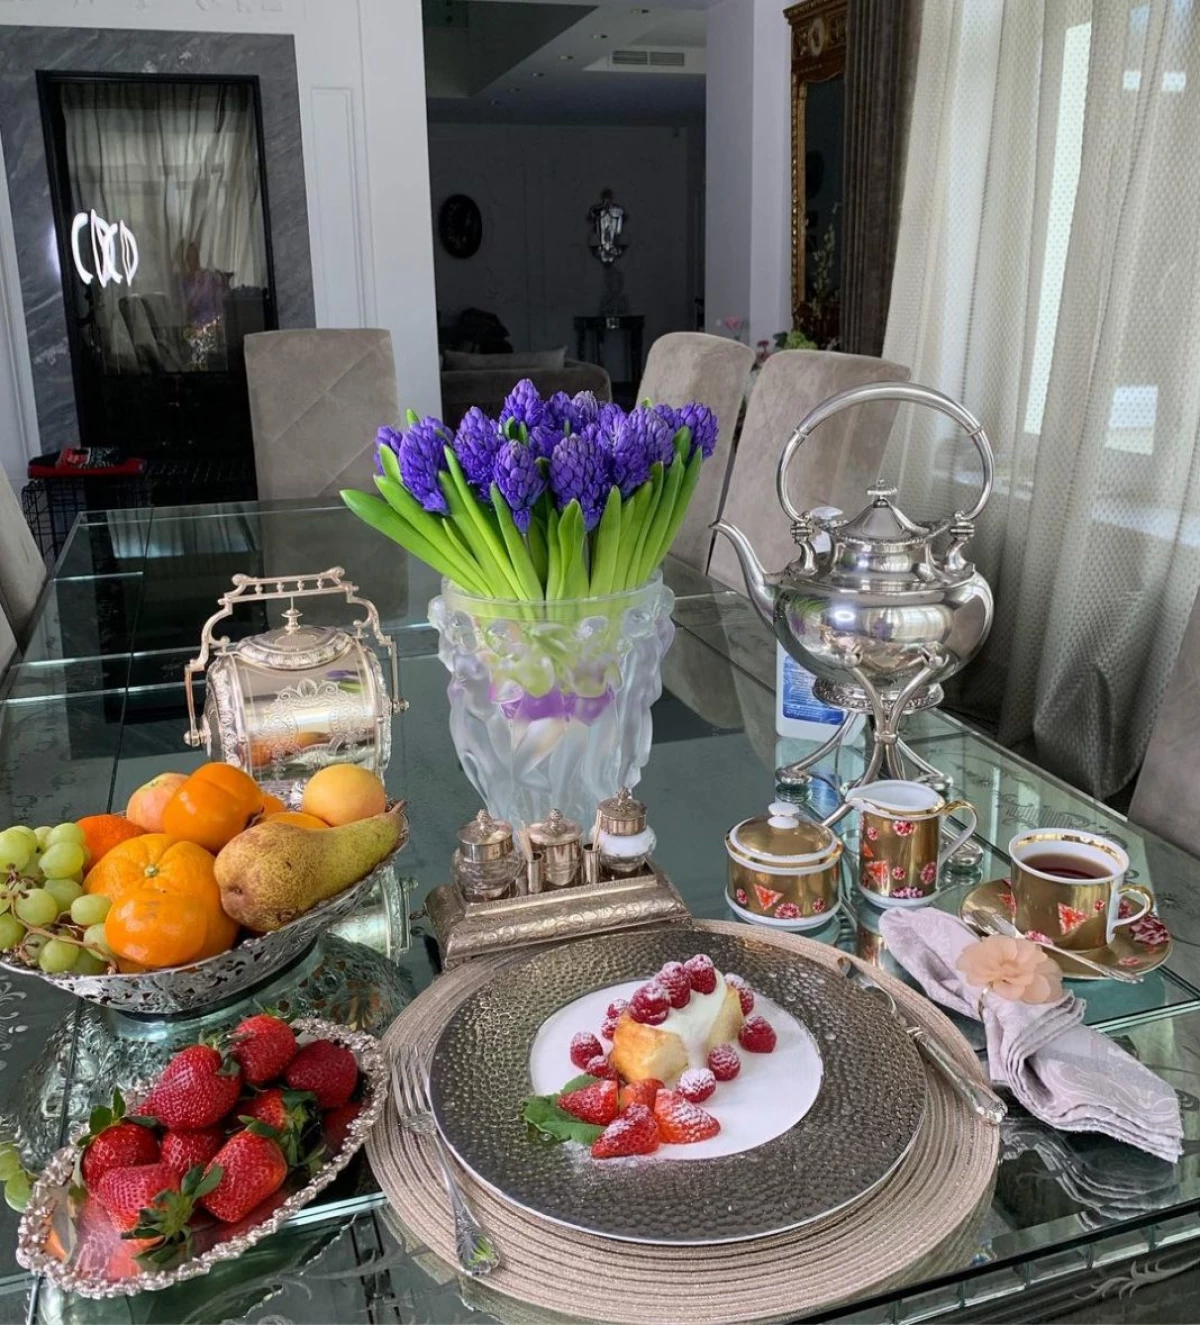 Zjawisko rosyjskiego Instagram - Yana Rudkovskaya śniadania na średniej pensji pracowników stanu 5214_8